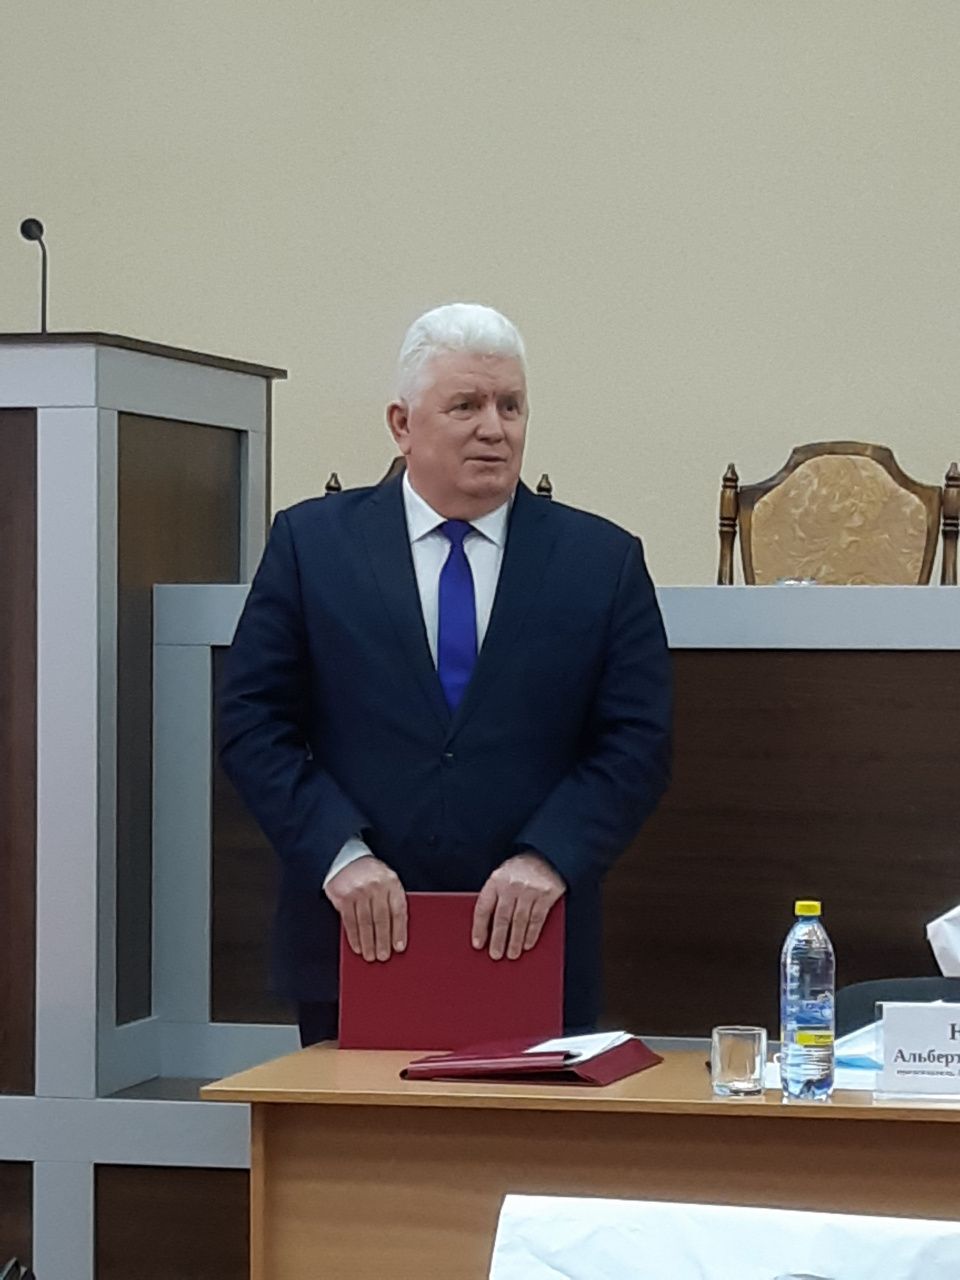 Альберт Юсупов сложил полномочия председателя Думы Серова